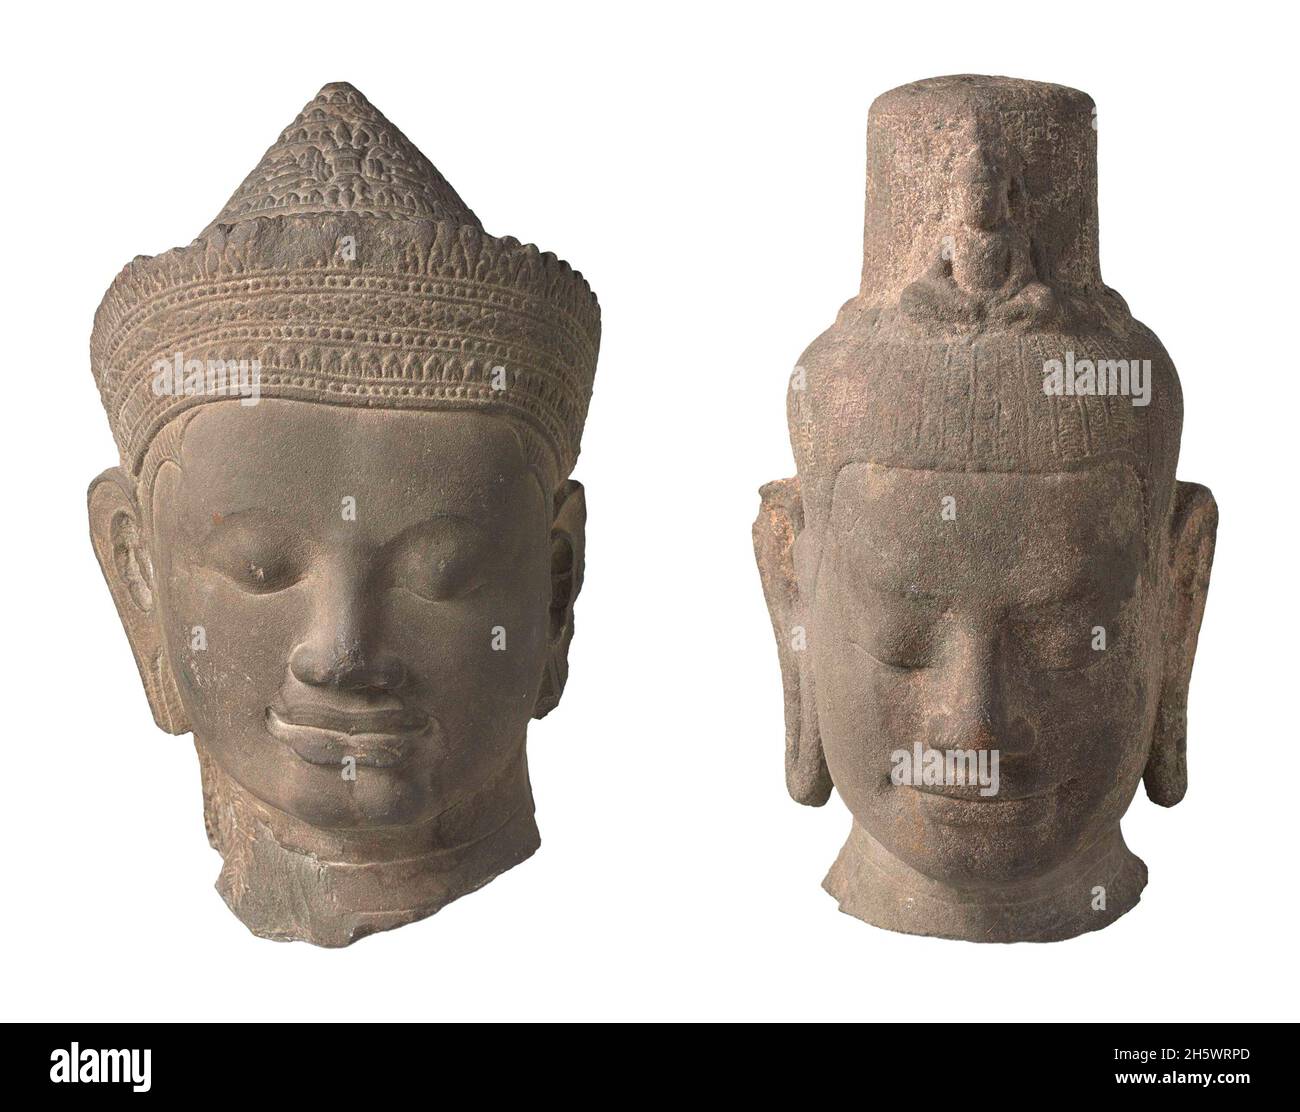 LINKS: Geschnitzter Steinkopf aus einer liegenden Figur des Hindu-gottes Vishnu. Nach dem hinduistischen Glauben ist die Schöpfung zyklisch. Vor jedem neuen Schöpfungszyklus schläft Vishnu und träumt von der kommenden Regeneration. RECHTS: Geschnitzter Steinkopf des Bodhisattva Lokeshvara, der in der Nähe des westlichen Tores der ummauerten Stadt Angkor Thom gefunden wurde. Ende des 12. Jahrhunderts wurde dort der Bodhisattva Lokeshvara besonders verehrt. Der Ausdruck, mit geschlossenen Augen und einem glückseligen Lächeln, ist typisch für Figuren aus dieser Zeit der kambodschanischen Kunst Stockfoto